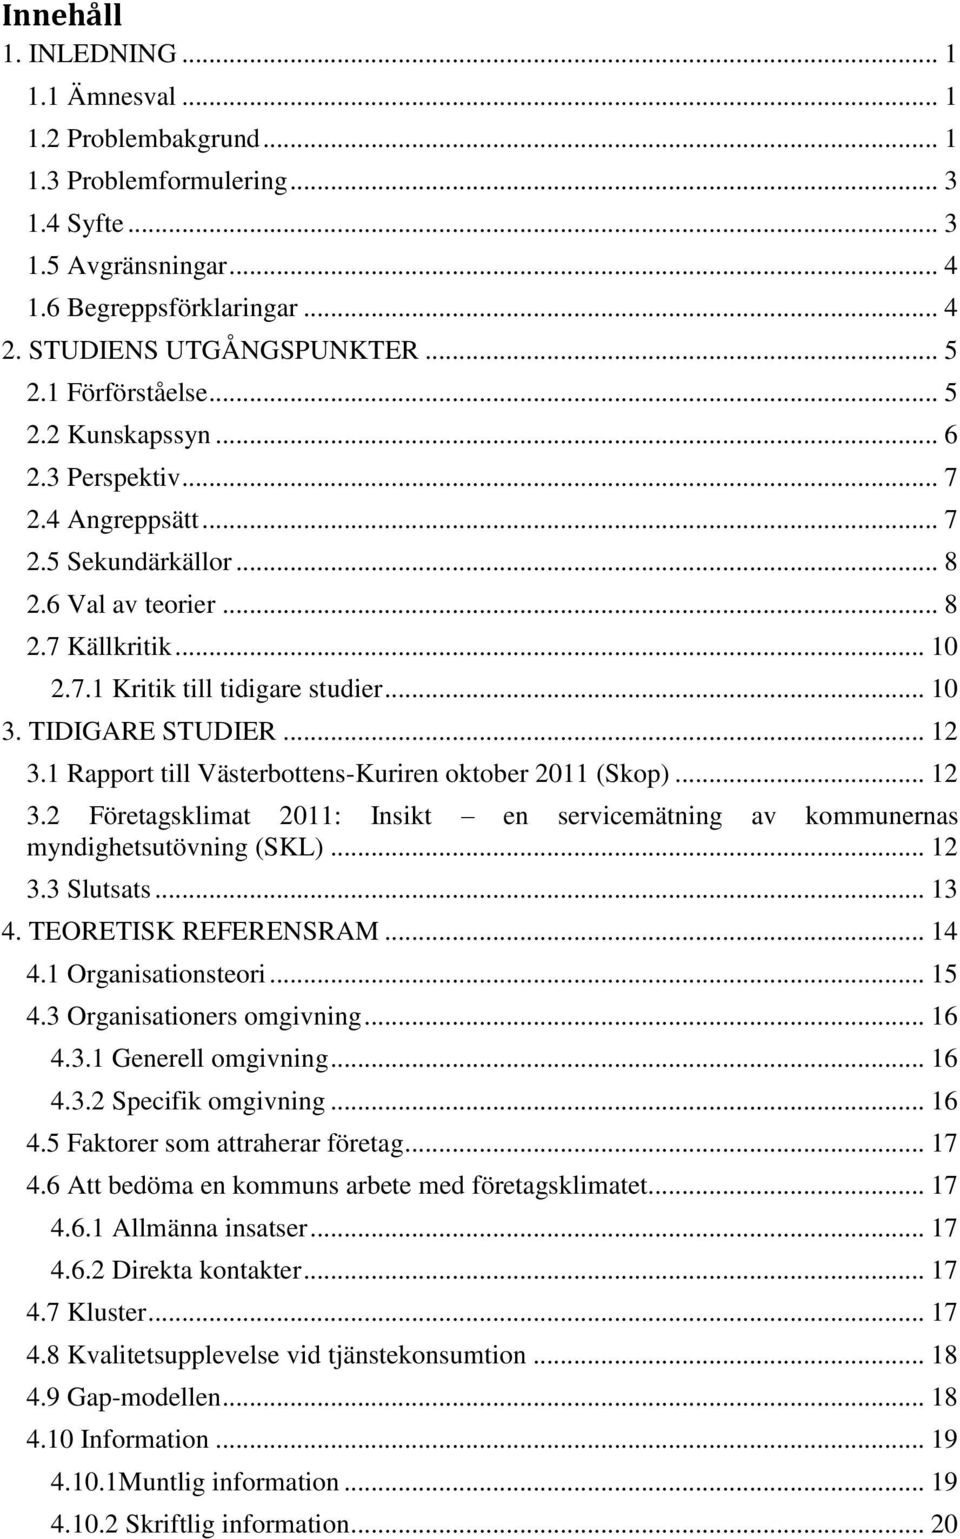 TIDIGARE STUDIER... 12 3.1 Rapport till Västerbottens-Kuriren oktober 2011 (Skop)... 12 3.2 Företagsklimat 2011: Insikt en servicemätning av kommunernas myndighetsutövning (SKL)... 12 3.3 Slutsats.